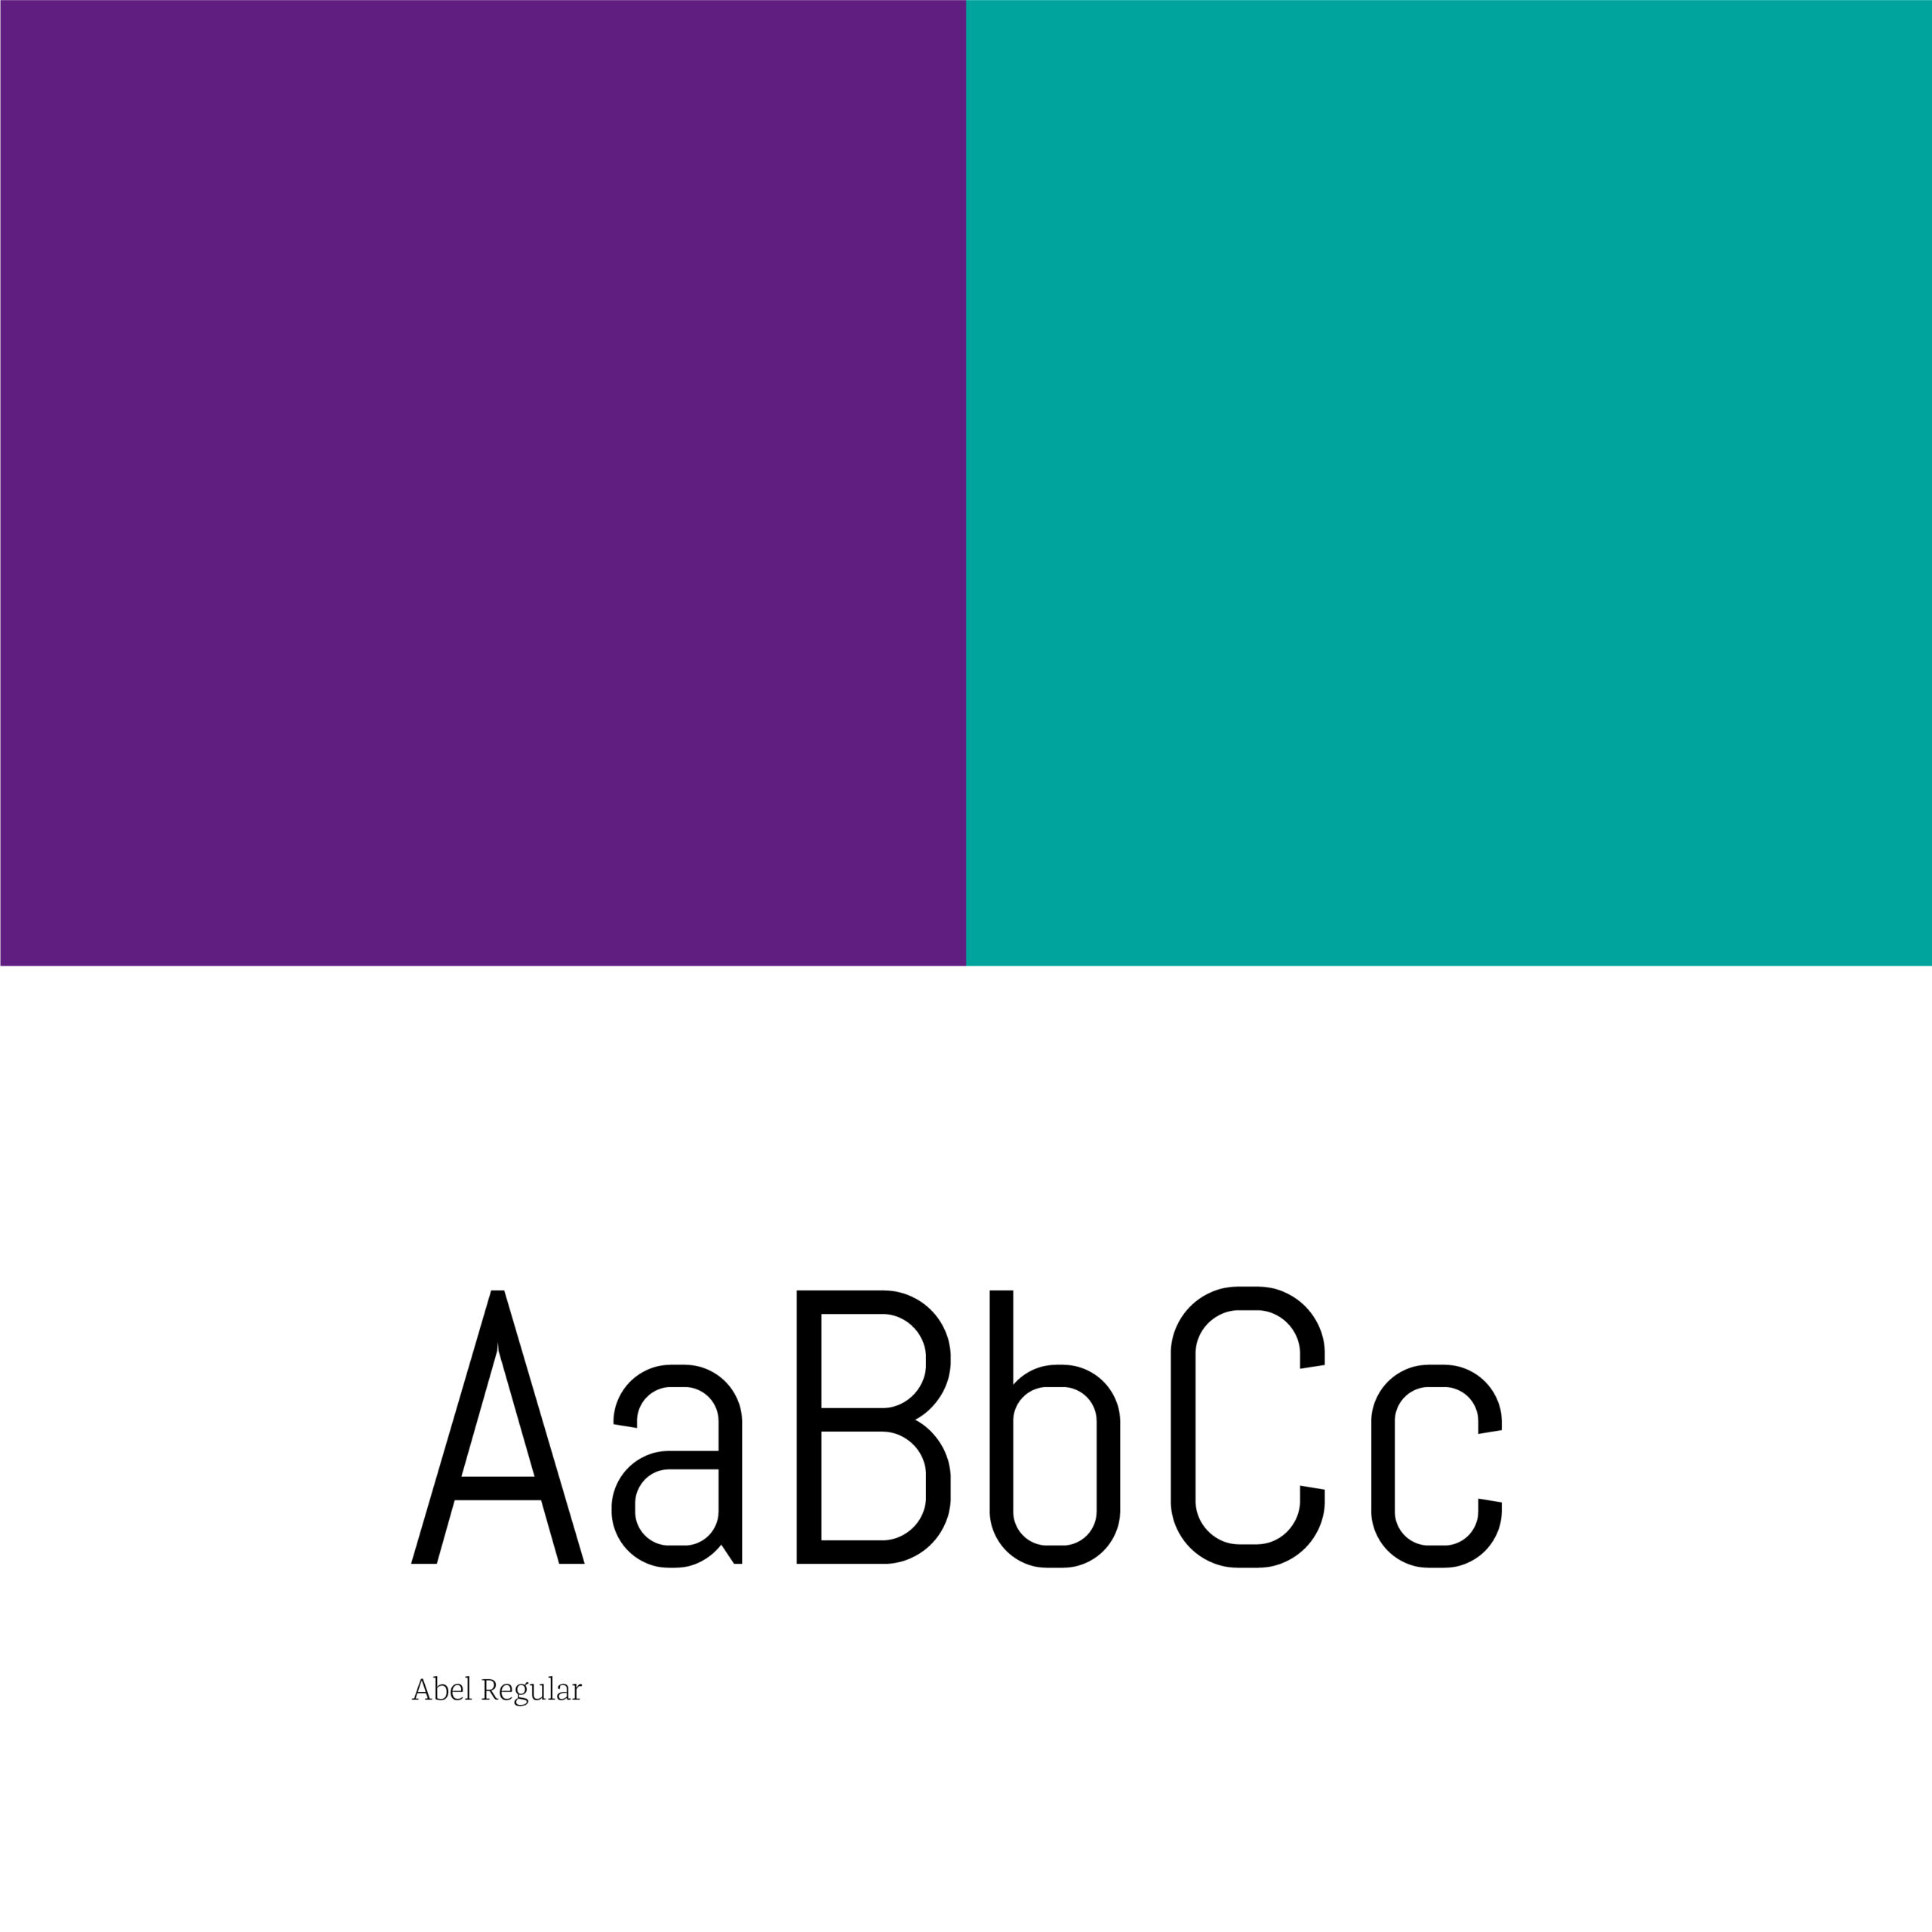 Farbe und Typografie unterstreichen den gesamt-technischen Charakter der neuen Marke.